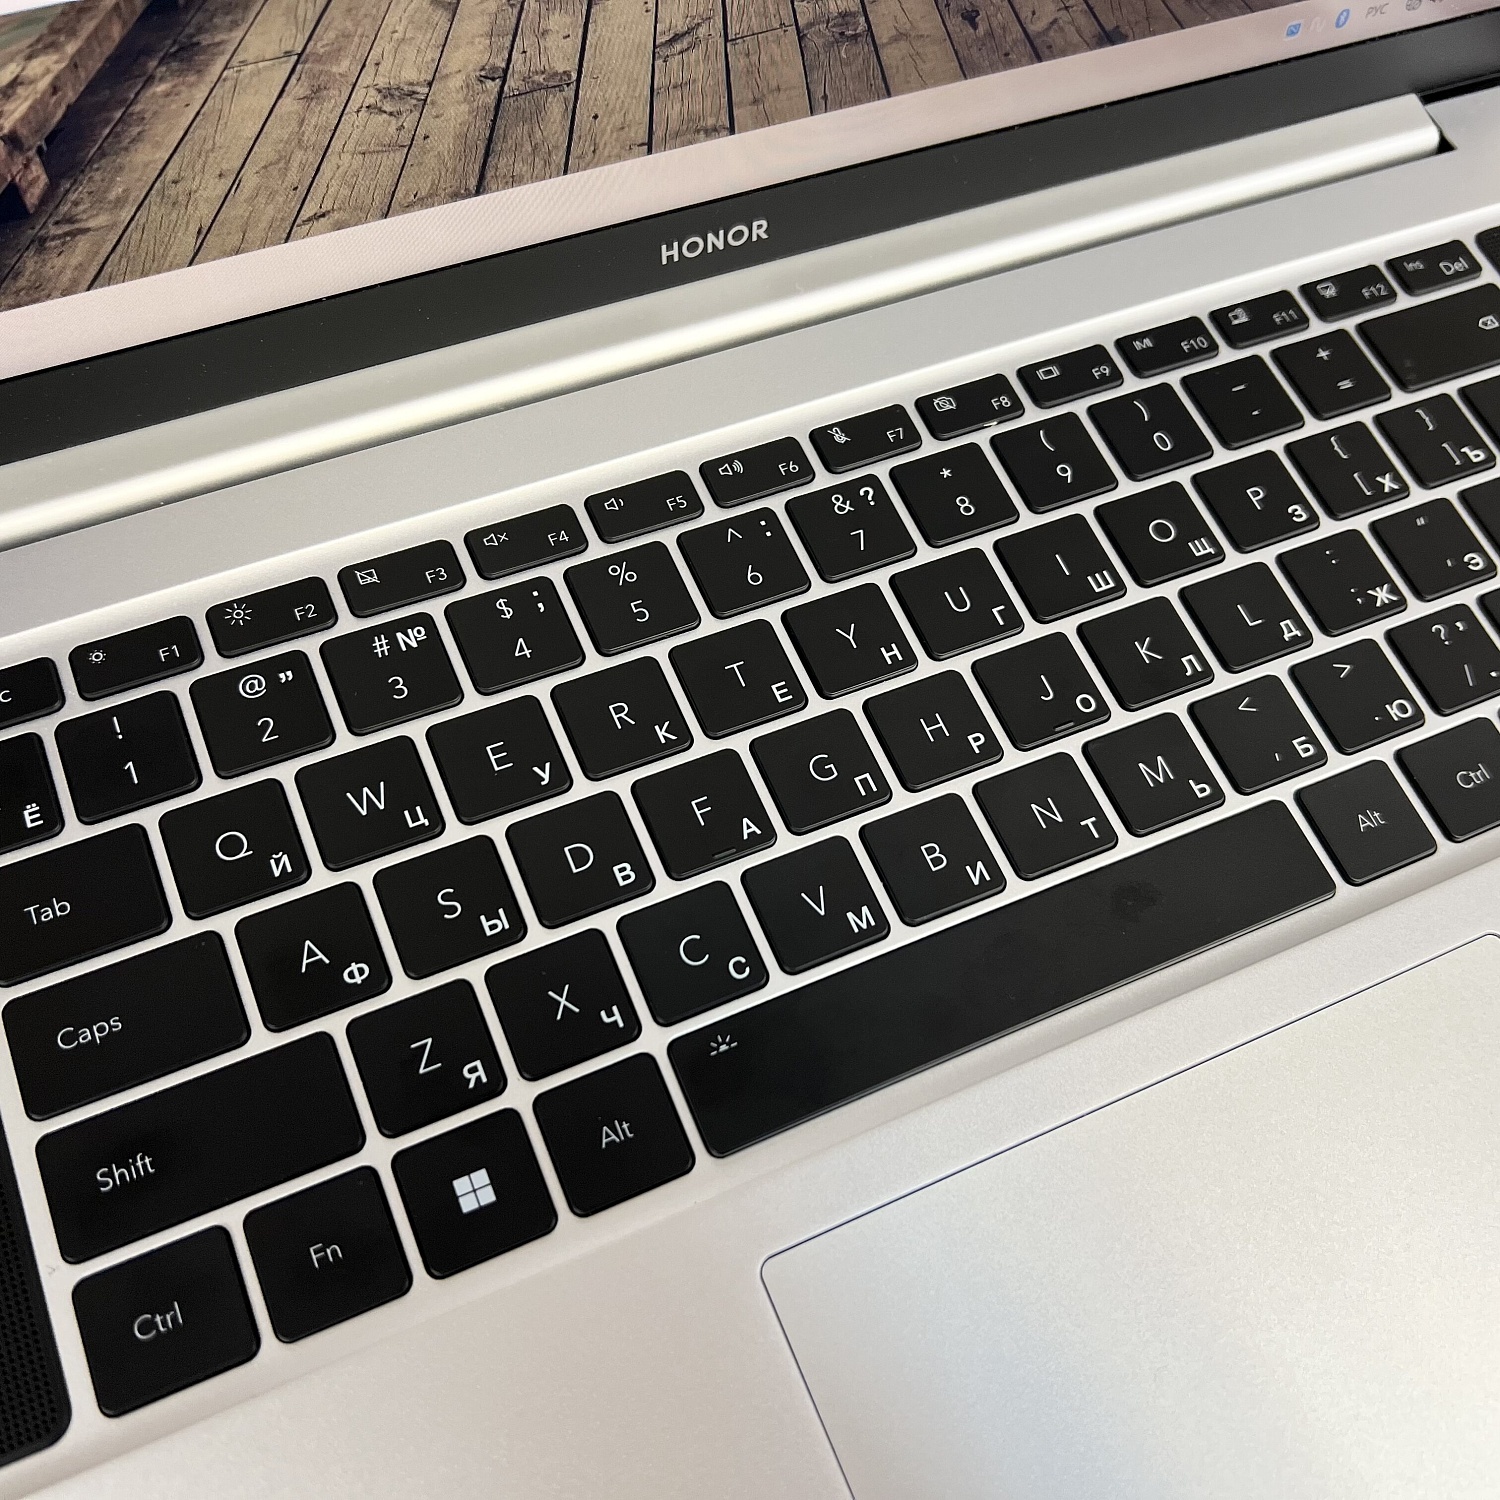 клавиатура ноутбука honor с гравировкой русских букв, сделано в Бастет Лазер